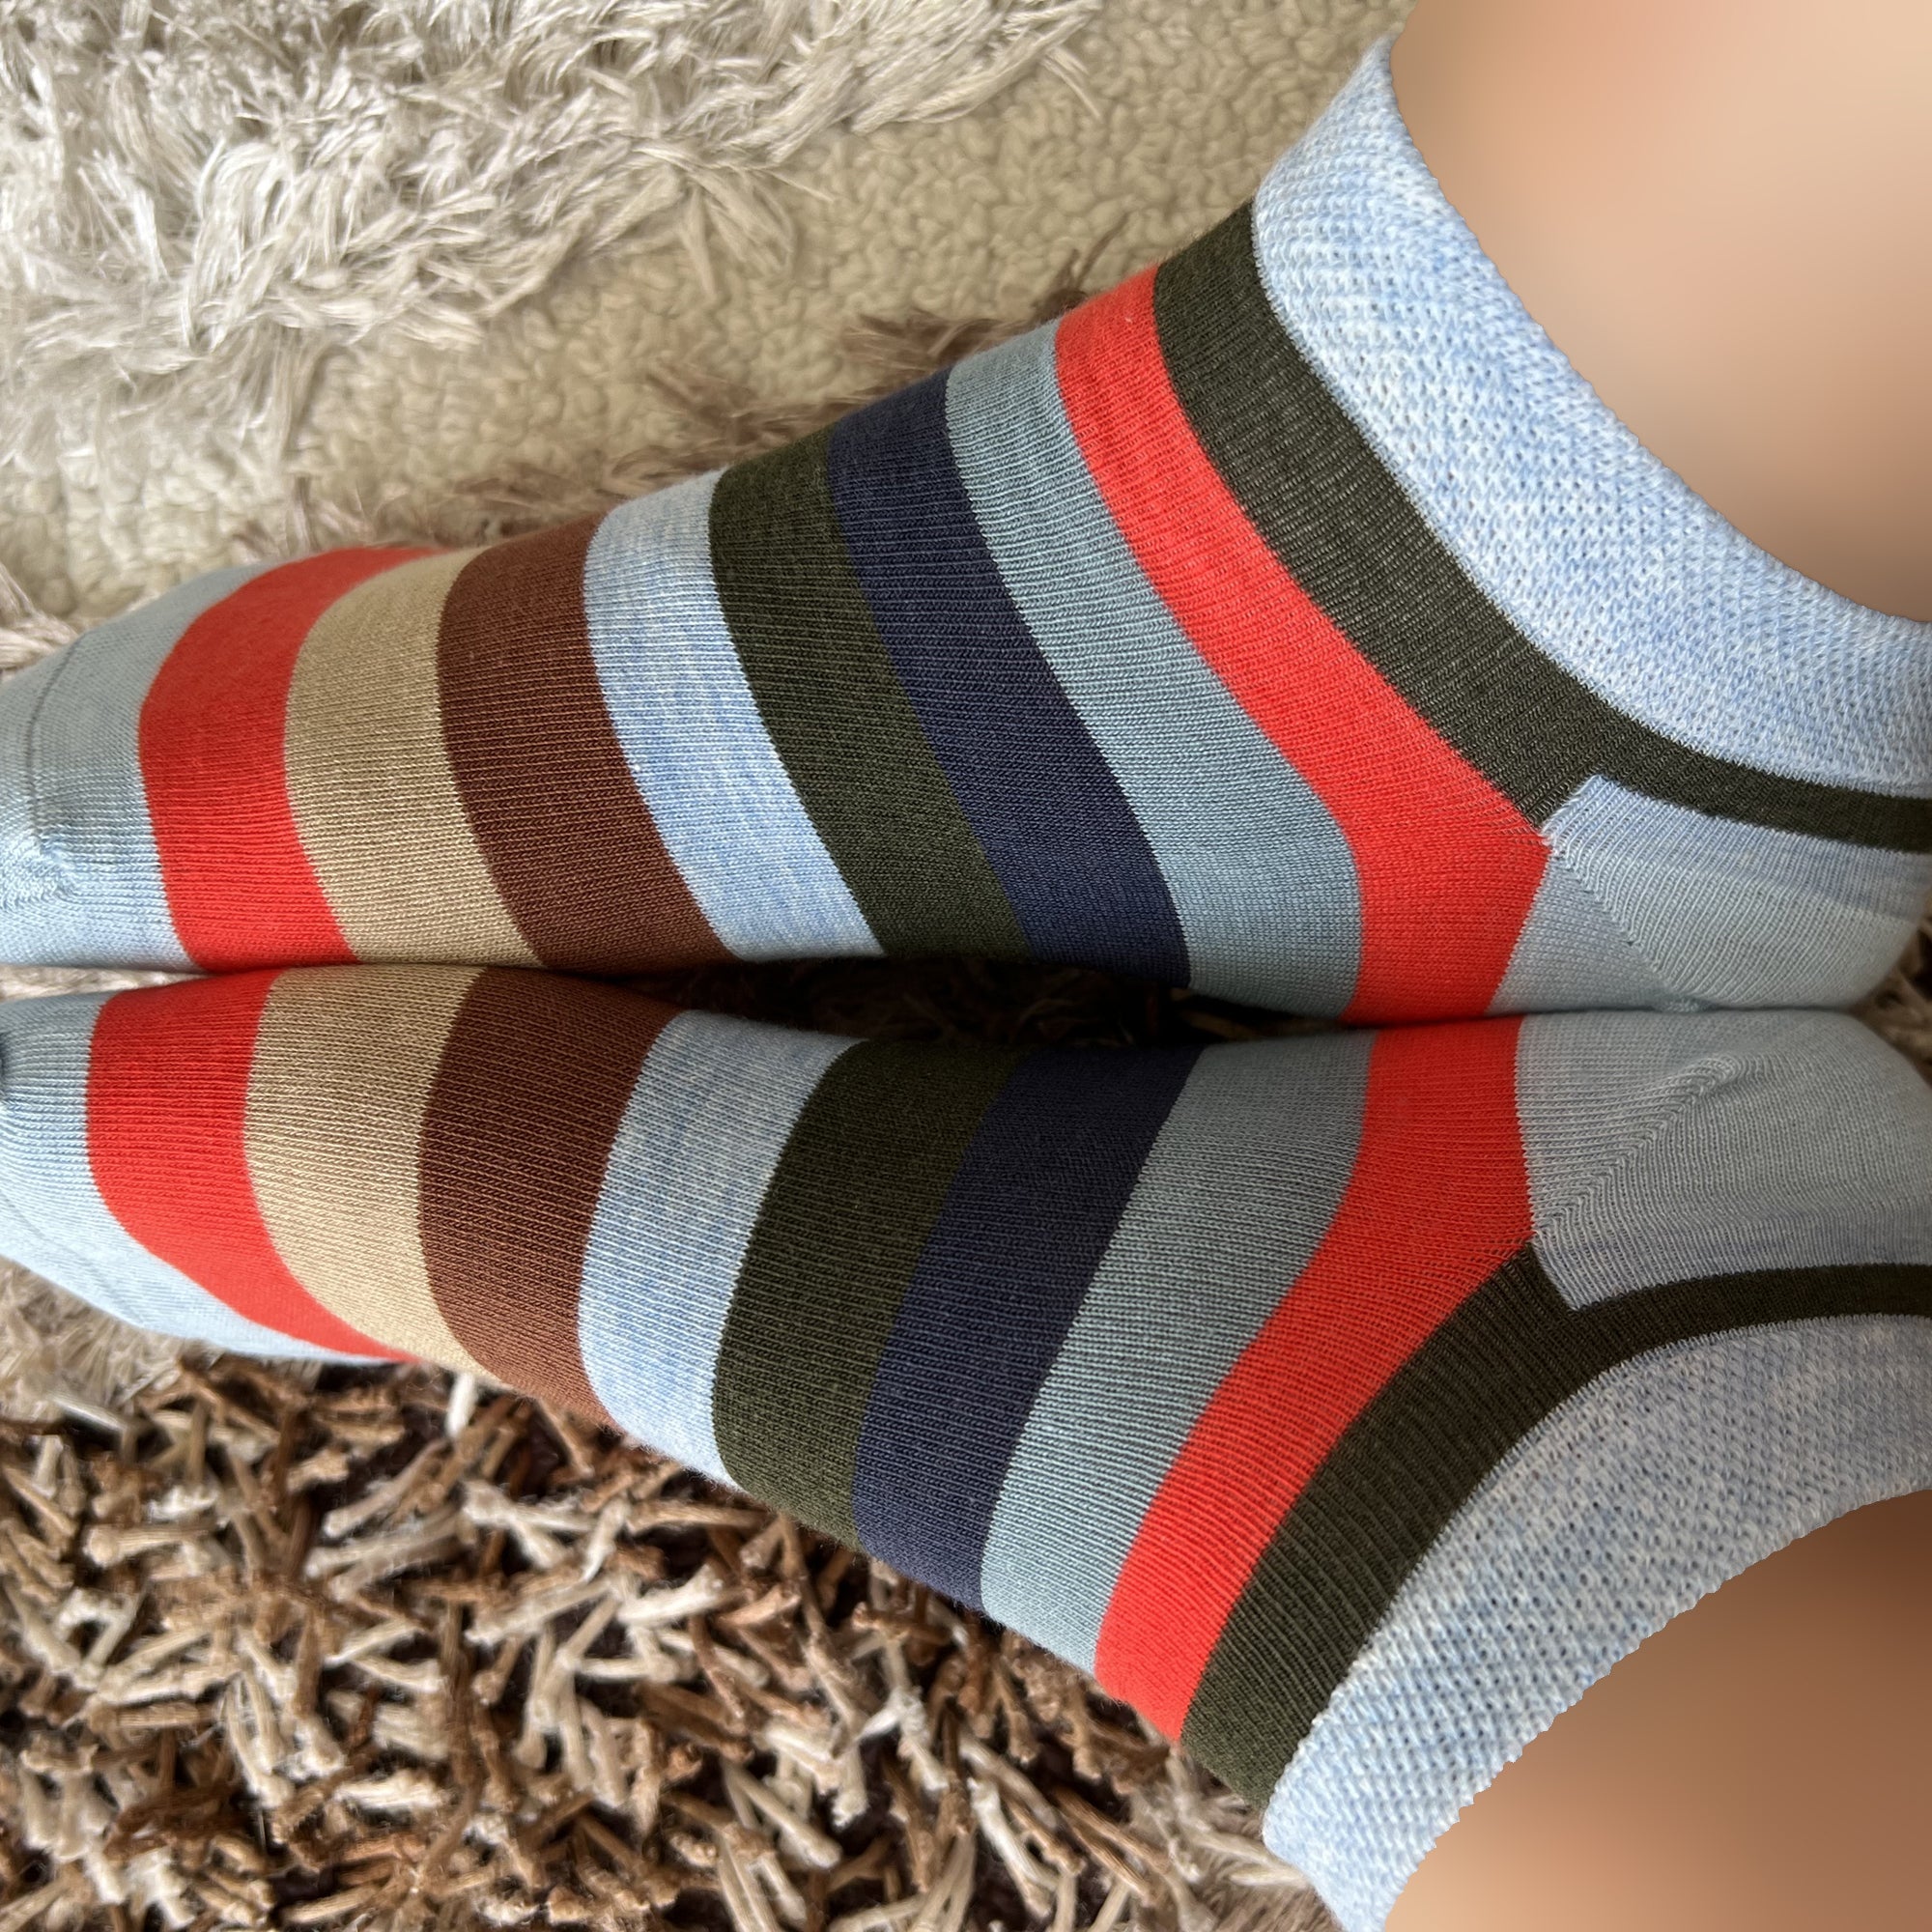 Louluu Stripped Low Cut Socks